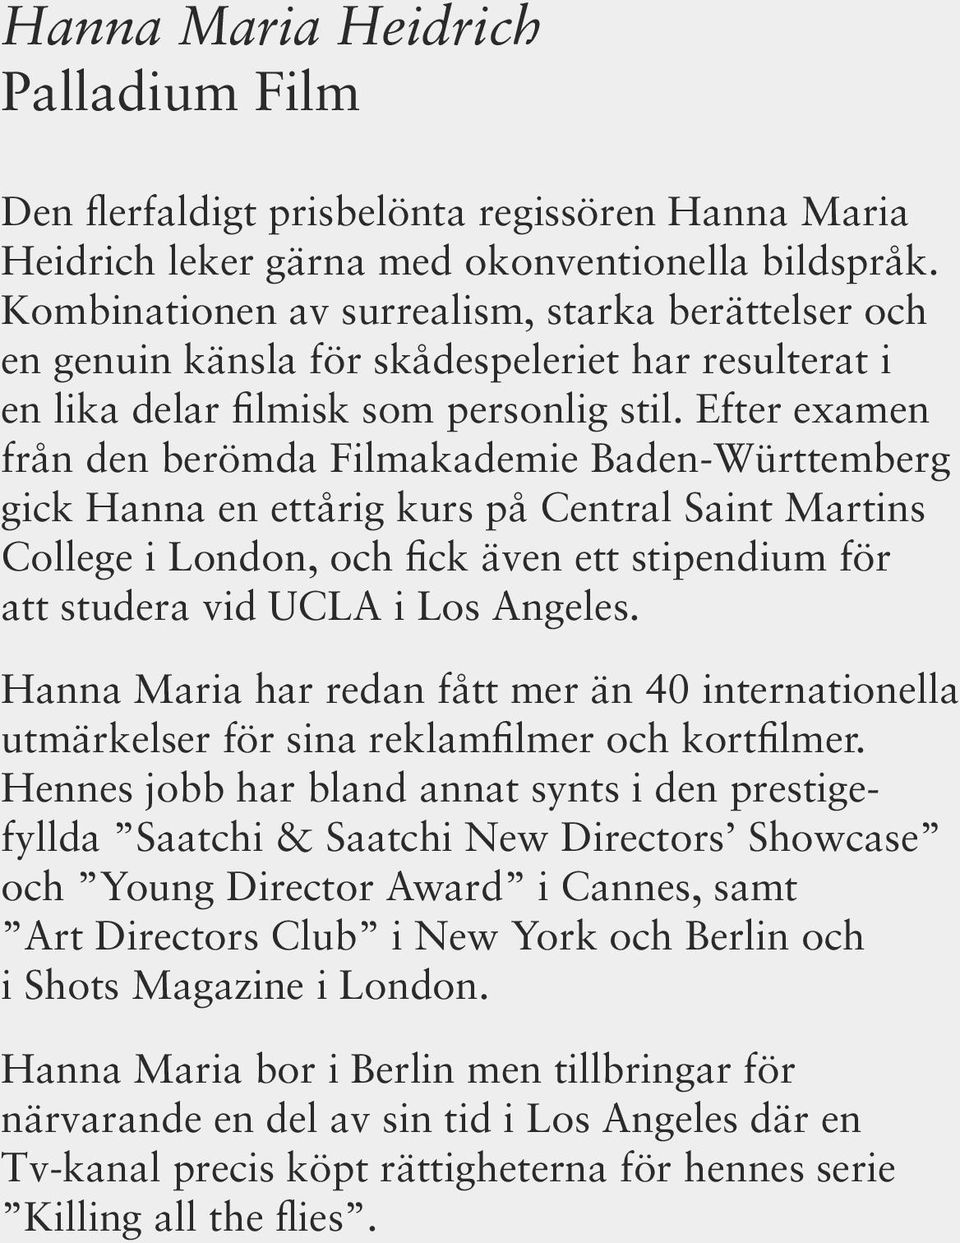 Efter examen från den berömda Filmakademie Baden-Württemberg gick Hanna en ettårig kurs på Central Saint Martins College i London, och fick även ett stipendium för att studera vid UCLA i Los Angeles.